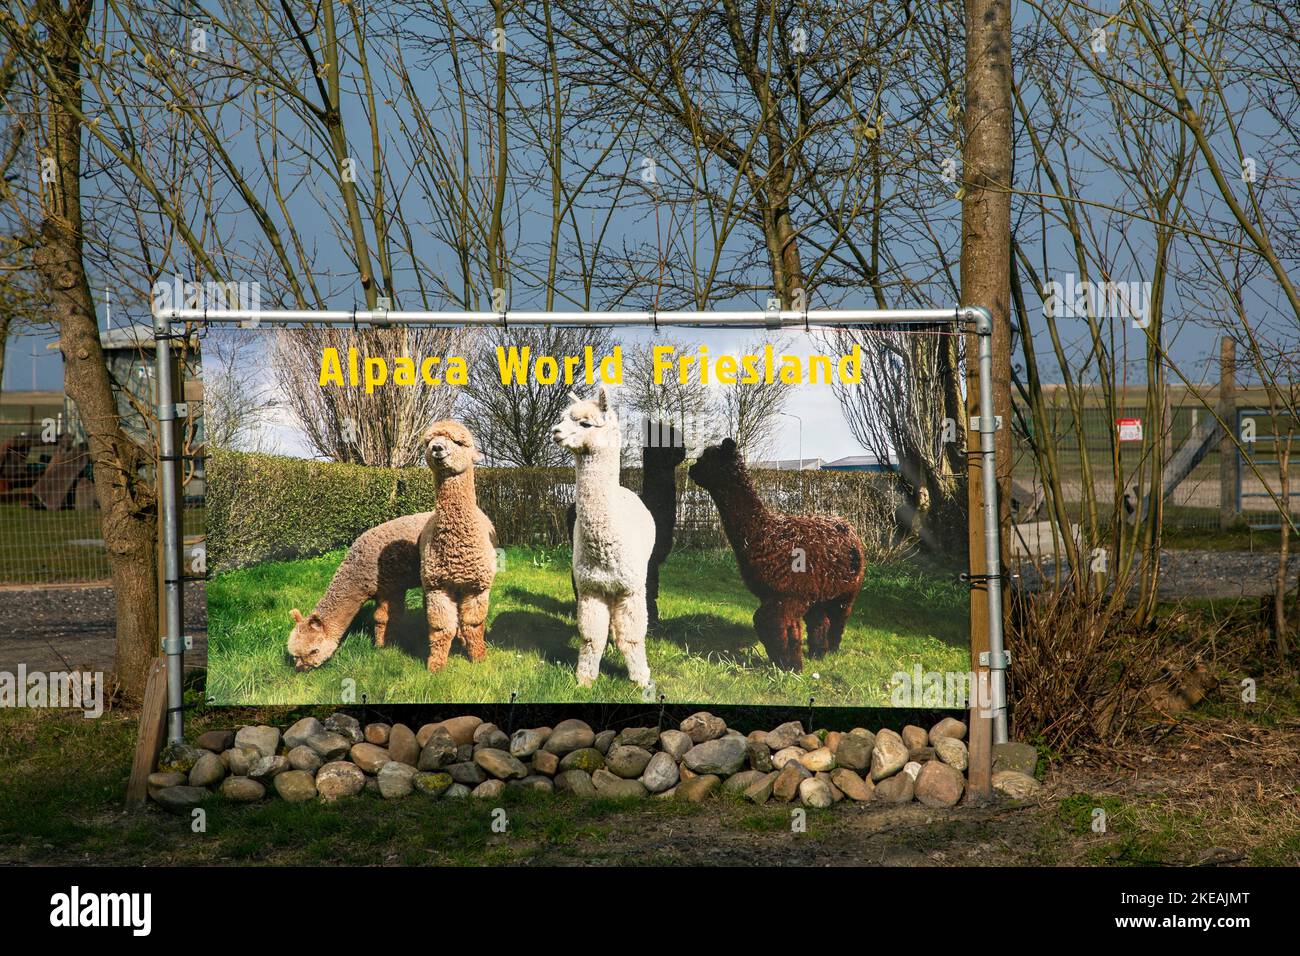 Alpaga (Lama pacos, Vicugna pacos), Alpaka World Friesland, affiche publicitaire pour la station de reproduction d'alpaga, pays-Bas, Frison, Workum Banque D'Images